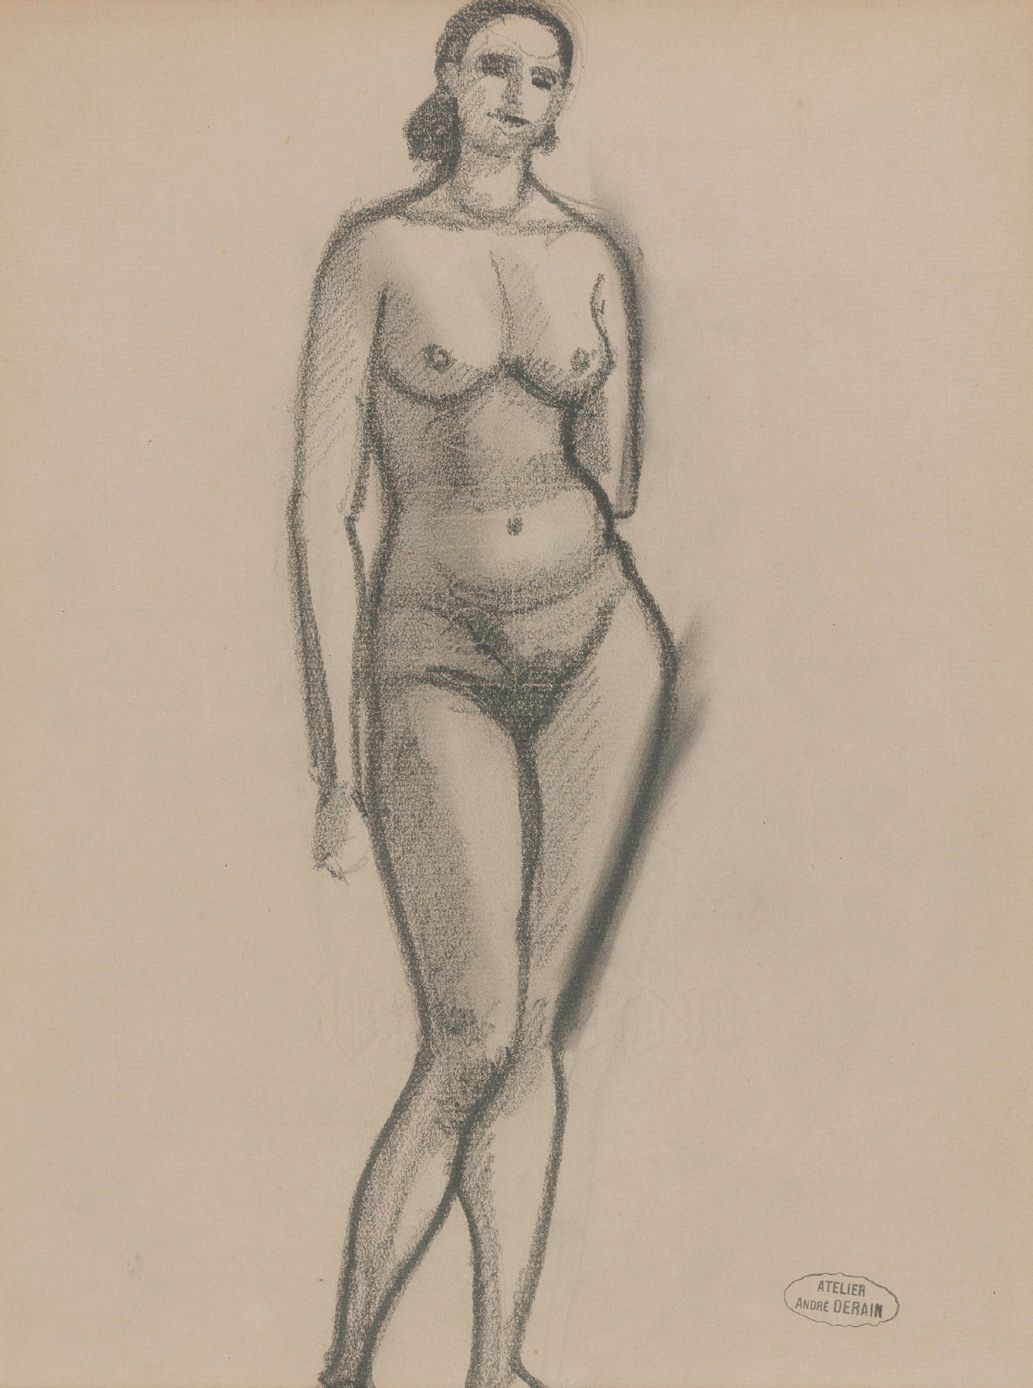 André DERAIN (1880-1954) 
站立的裸体。
纸上的炭笔。
右下角的工作室印章"ATELIER ANDRÉ DERAIN"
29 x 22 &hellip;